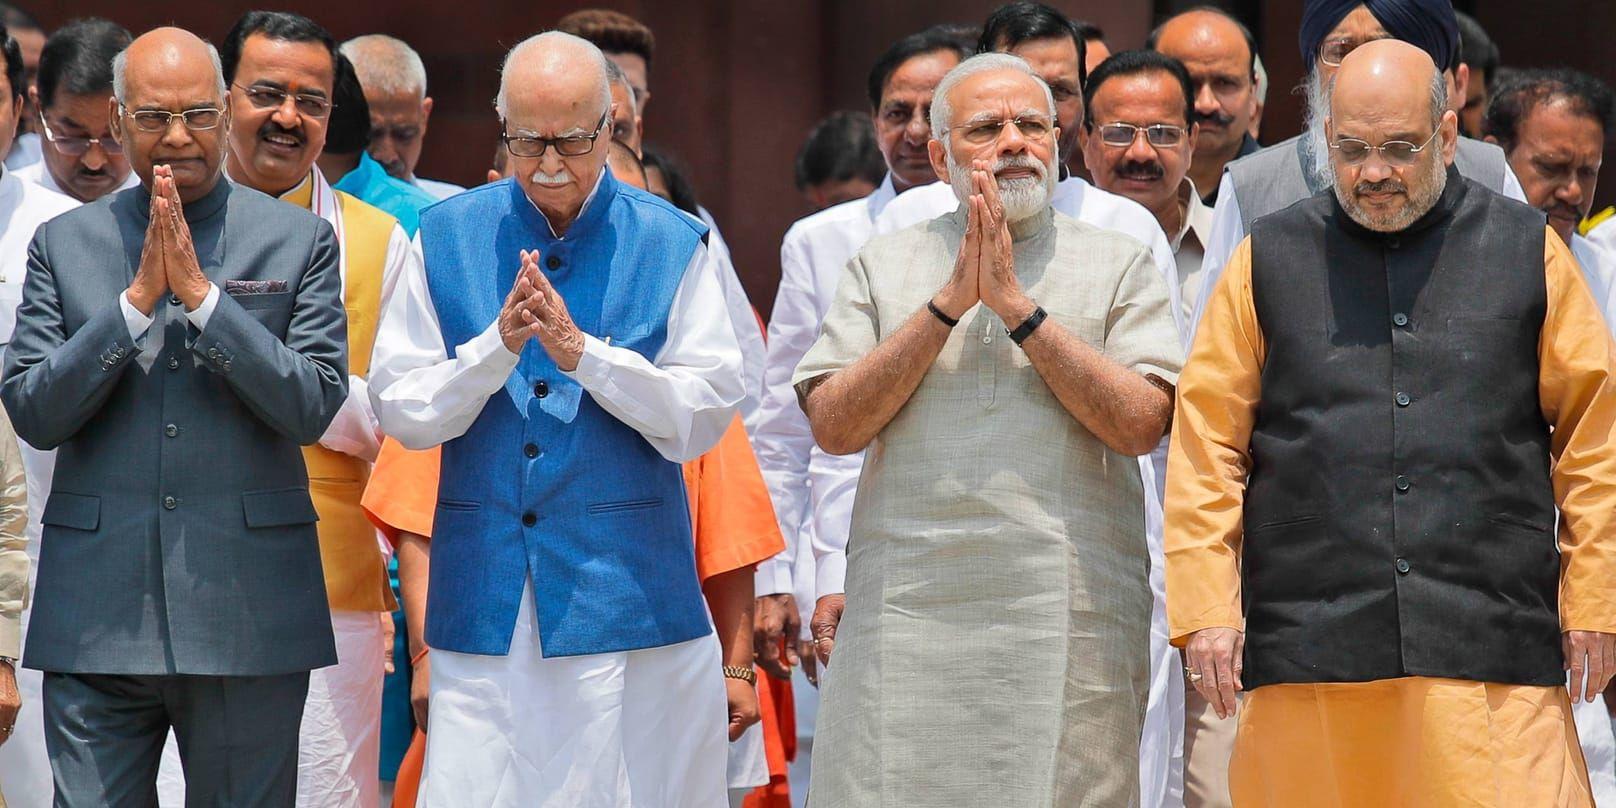 Ram Nath Kovind, längst till vänster, under ceremonin då han nominerades till ny president i Indien. Kovind, som är kastlös, väntas vinna omröstningen med stor majoritet. Arkivbild.